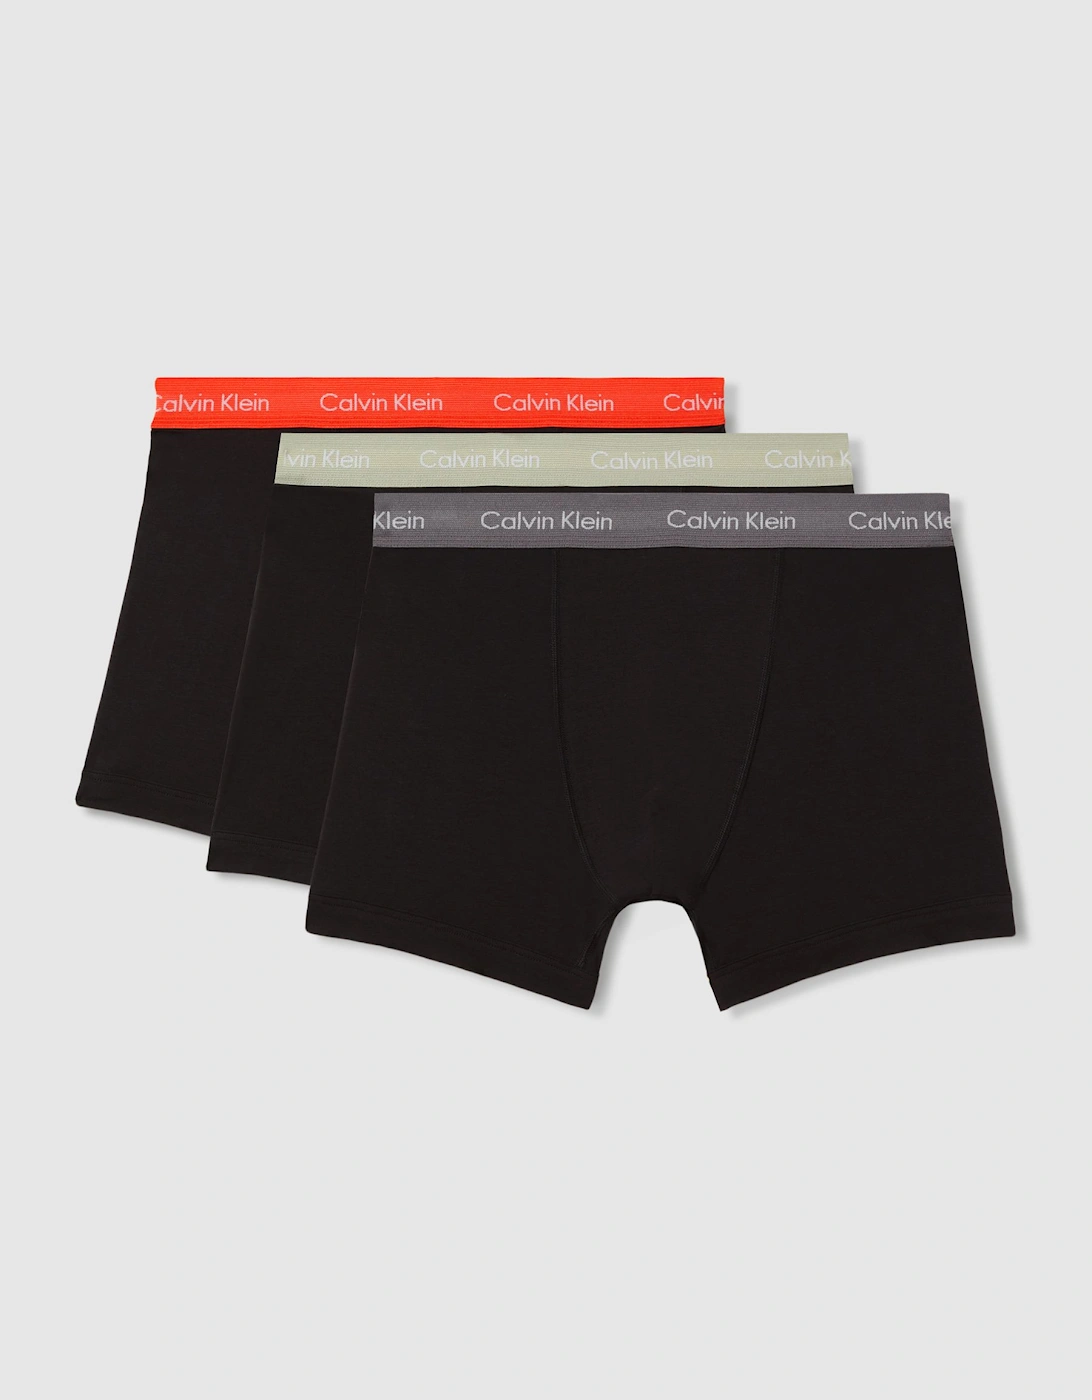 Calvin Klein Underwear Trunks 3 Pack, 2 of 1